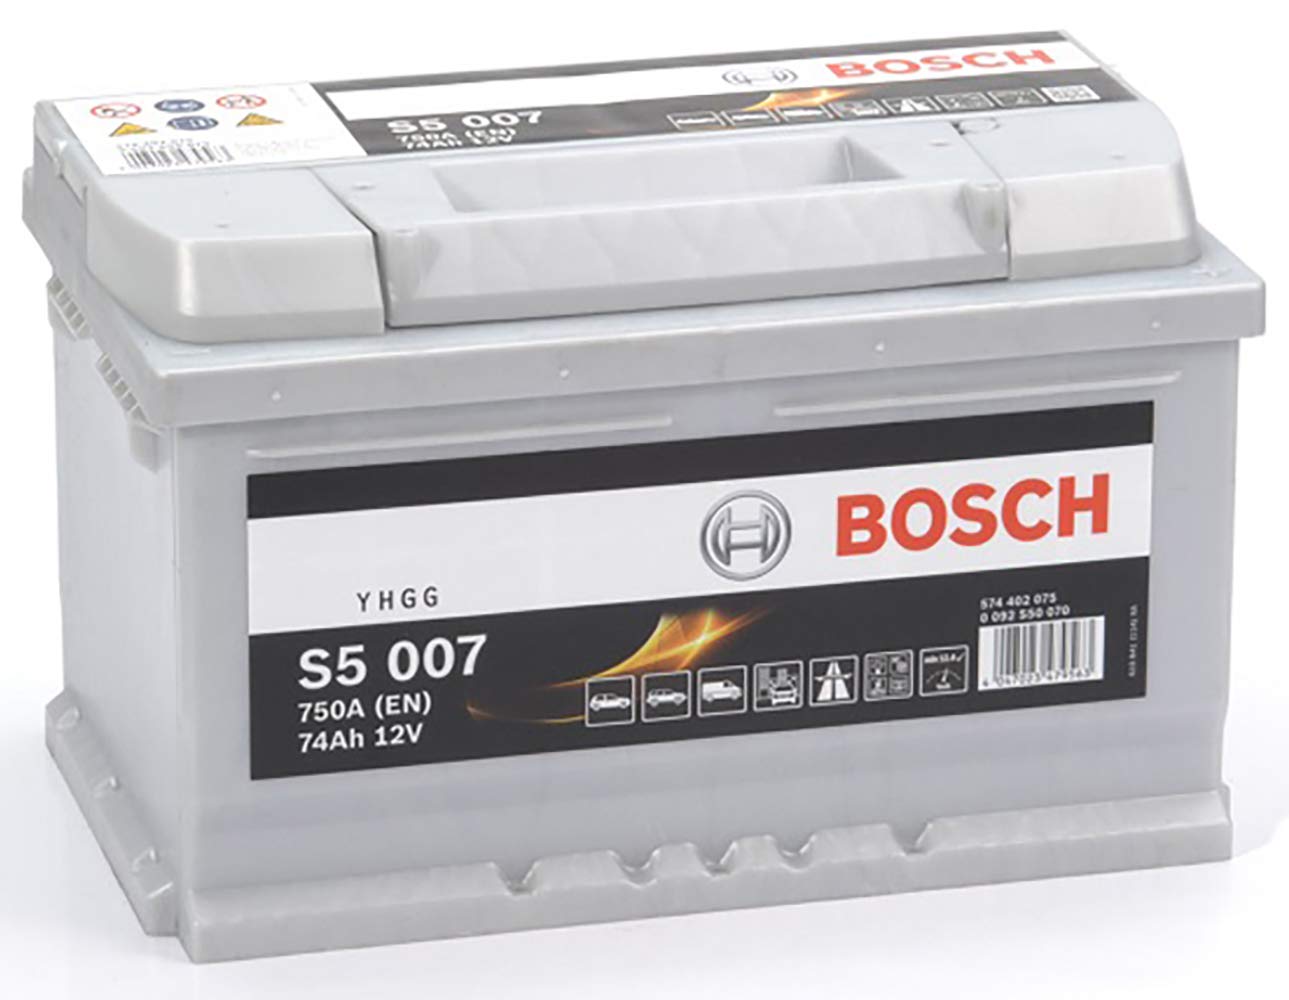 Bosch S5007 - Autobatterie - 74A/h - 750A - Blei-Säure-Technologie - für Fahrzeuge ohne Start-Stopp-System von Bosch Automotive